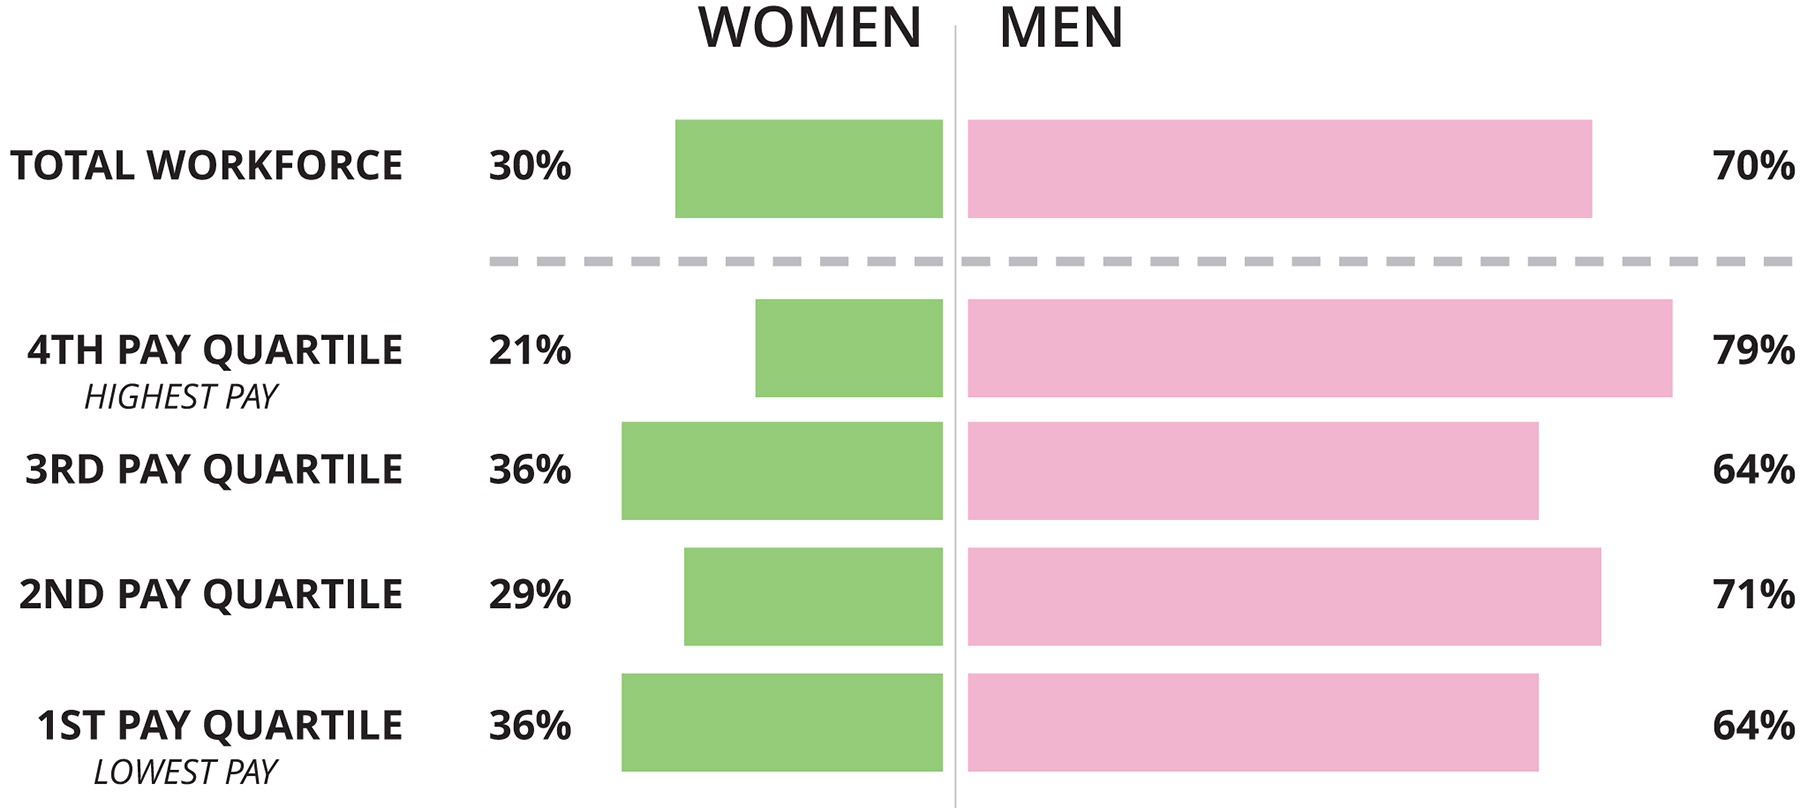 Gender pay gap analysis